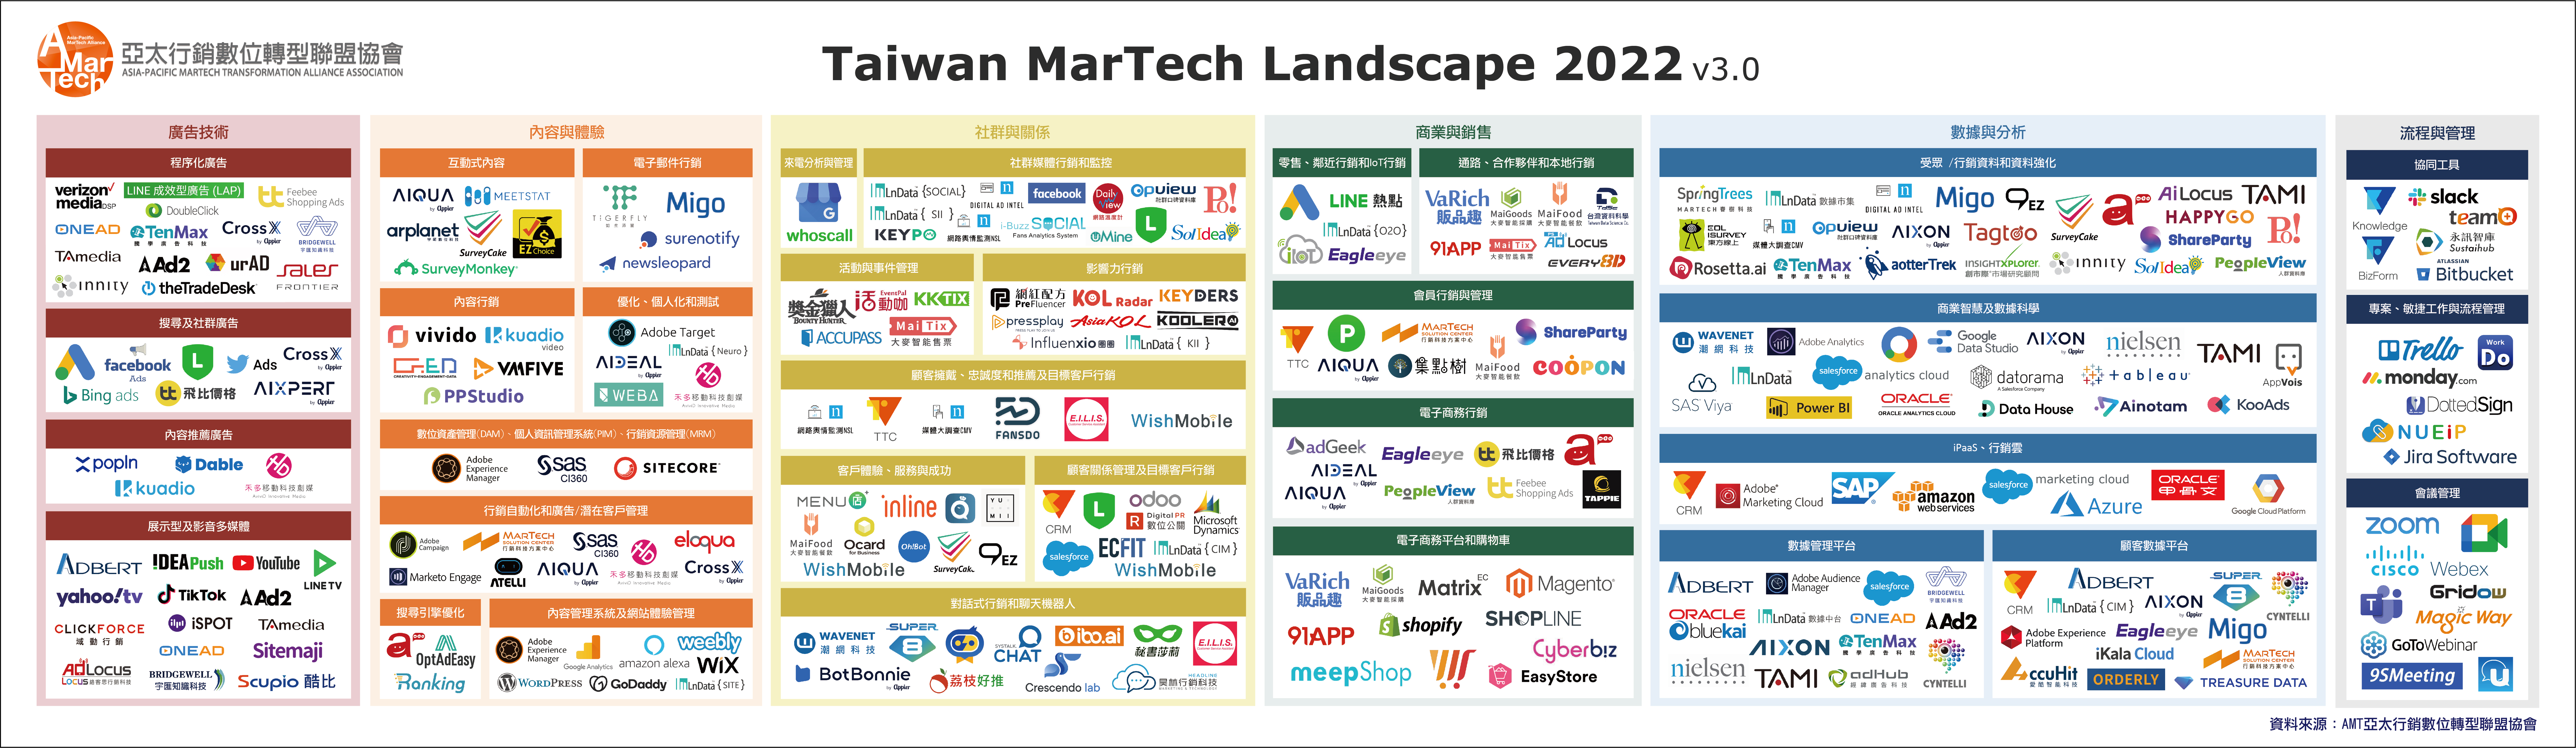 AMT《2022年台灣行銷科技(MarTech)版圖》出爐 新版數位行銷工具 爆發成長率51% 累積高達277個